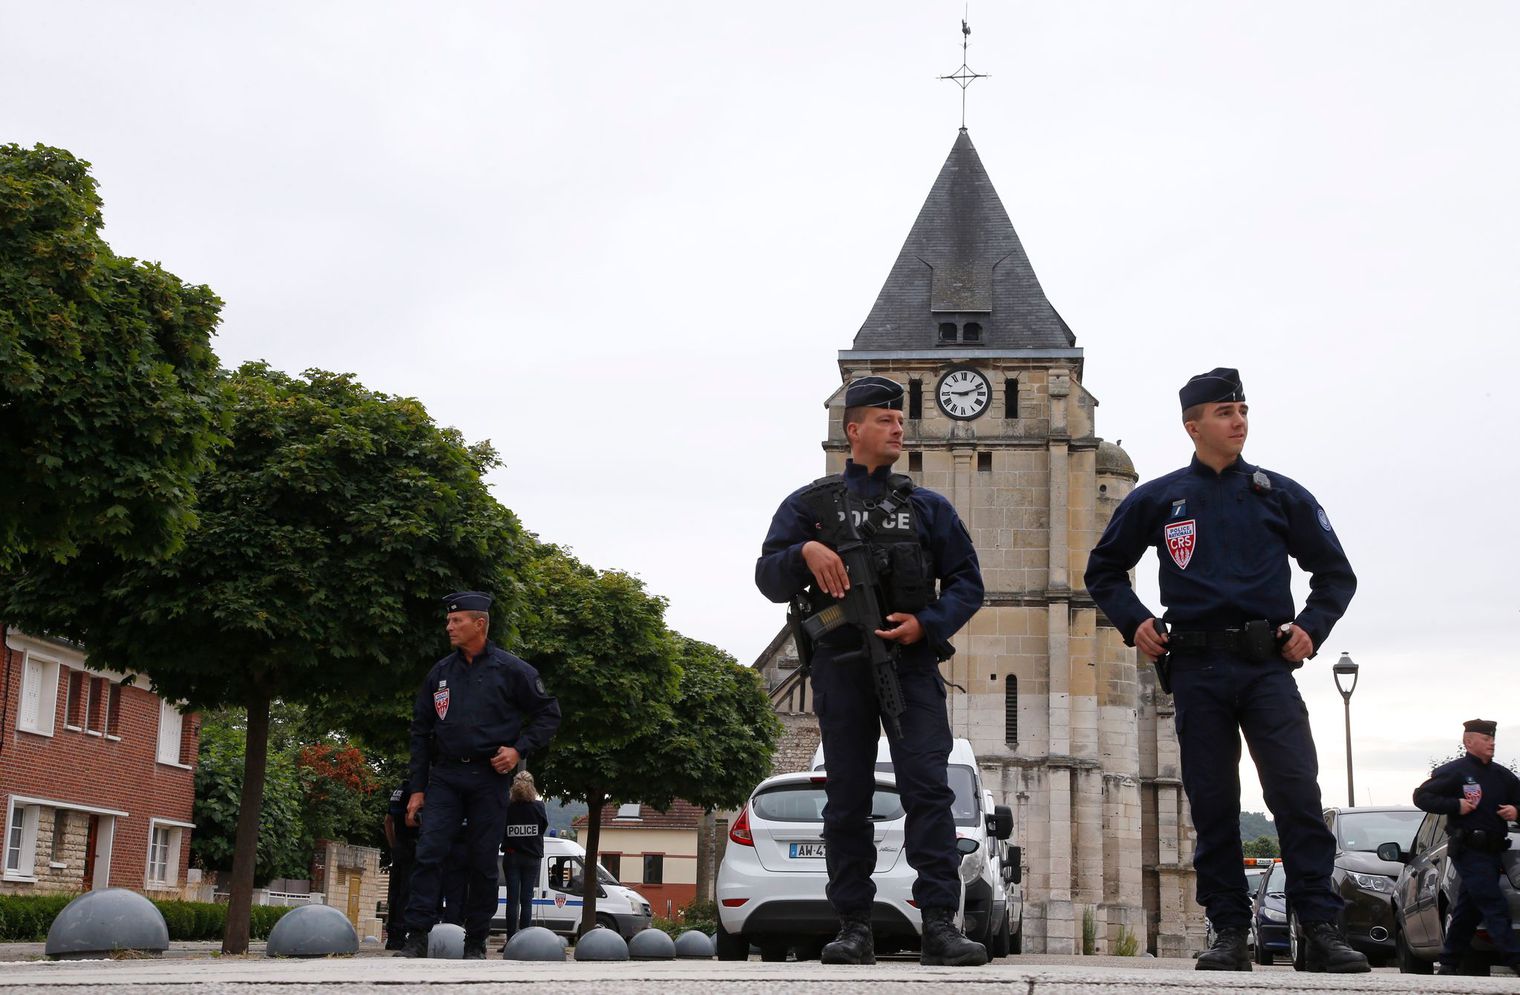 Le second assaillant de l’église Saint-Etienne-du-Rouvray identifié